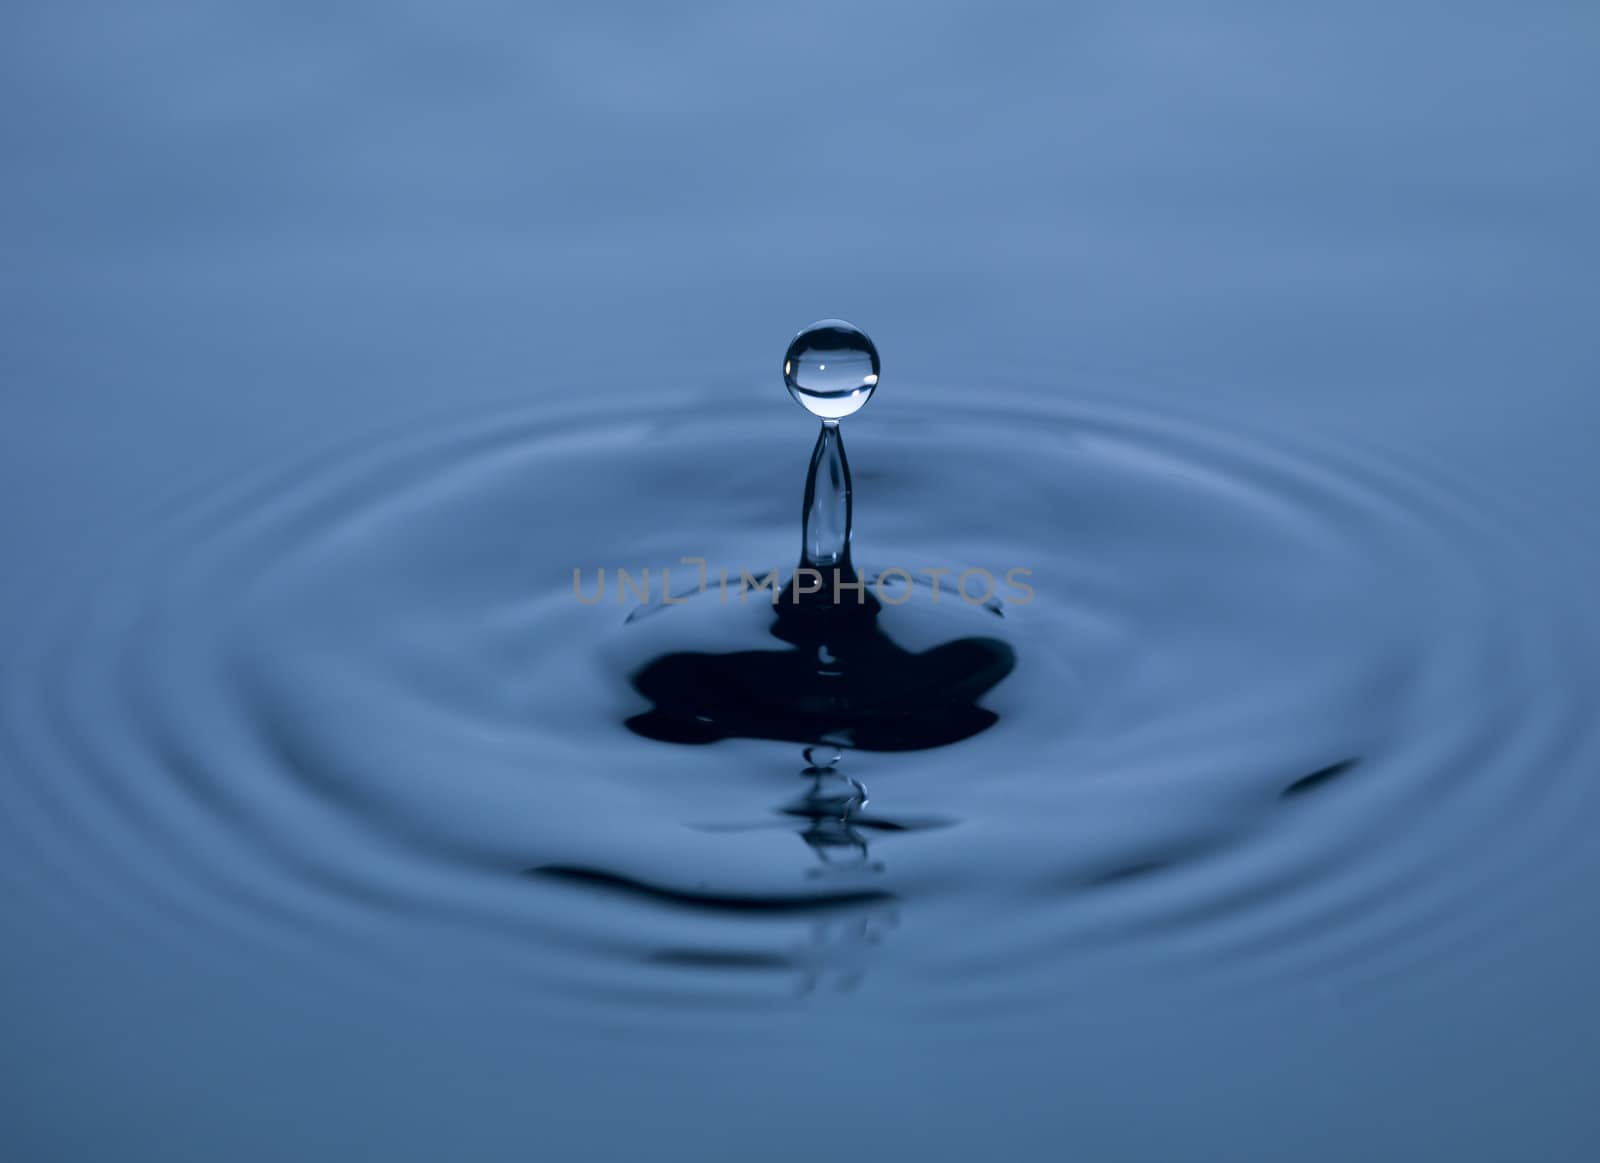 Water drop by gemenacom